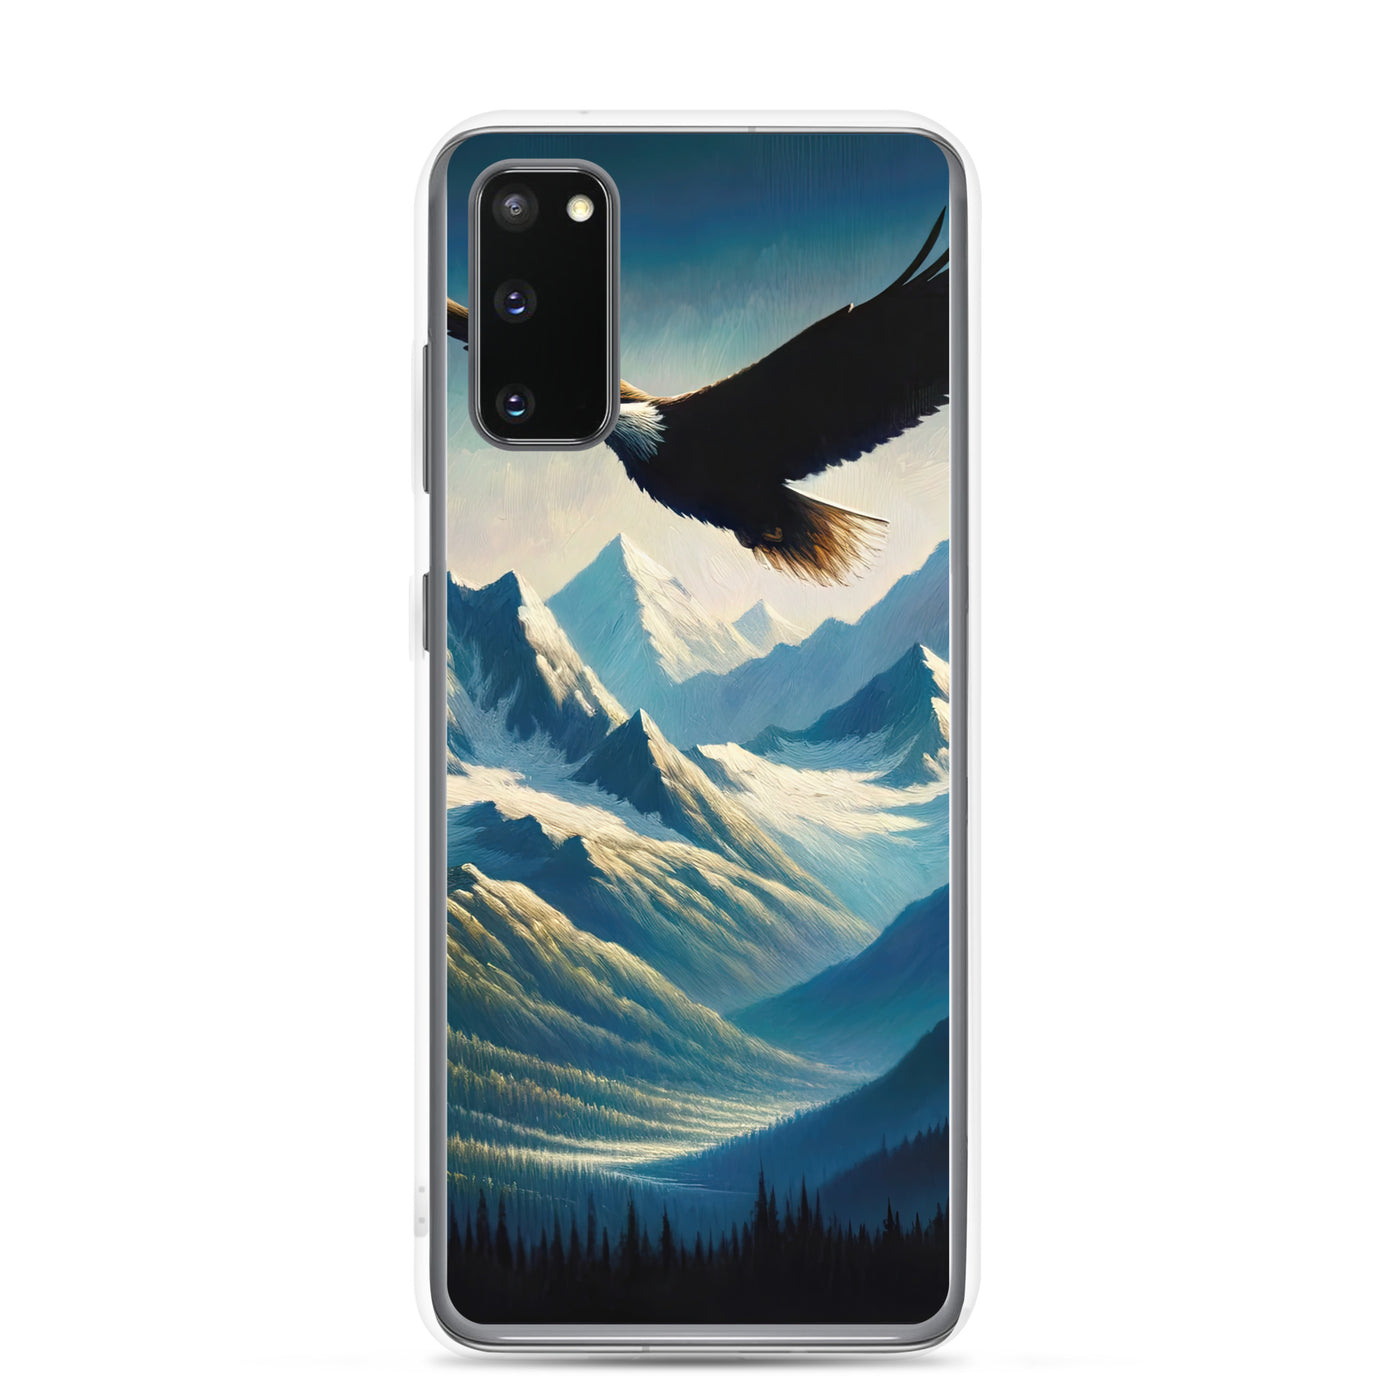 Ölgemälde eines Adlers vor schneebedeckten Bergsilhouetten - Samsung Schutzhülle (durchsichtig) berge xxx yyy zzz Samsung Galaxy S20